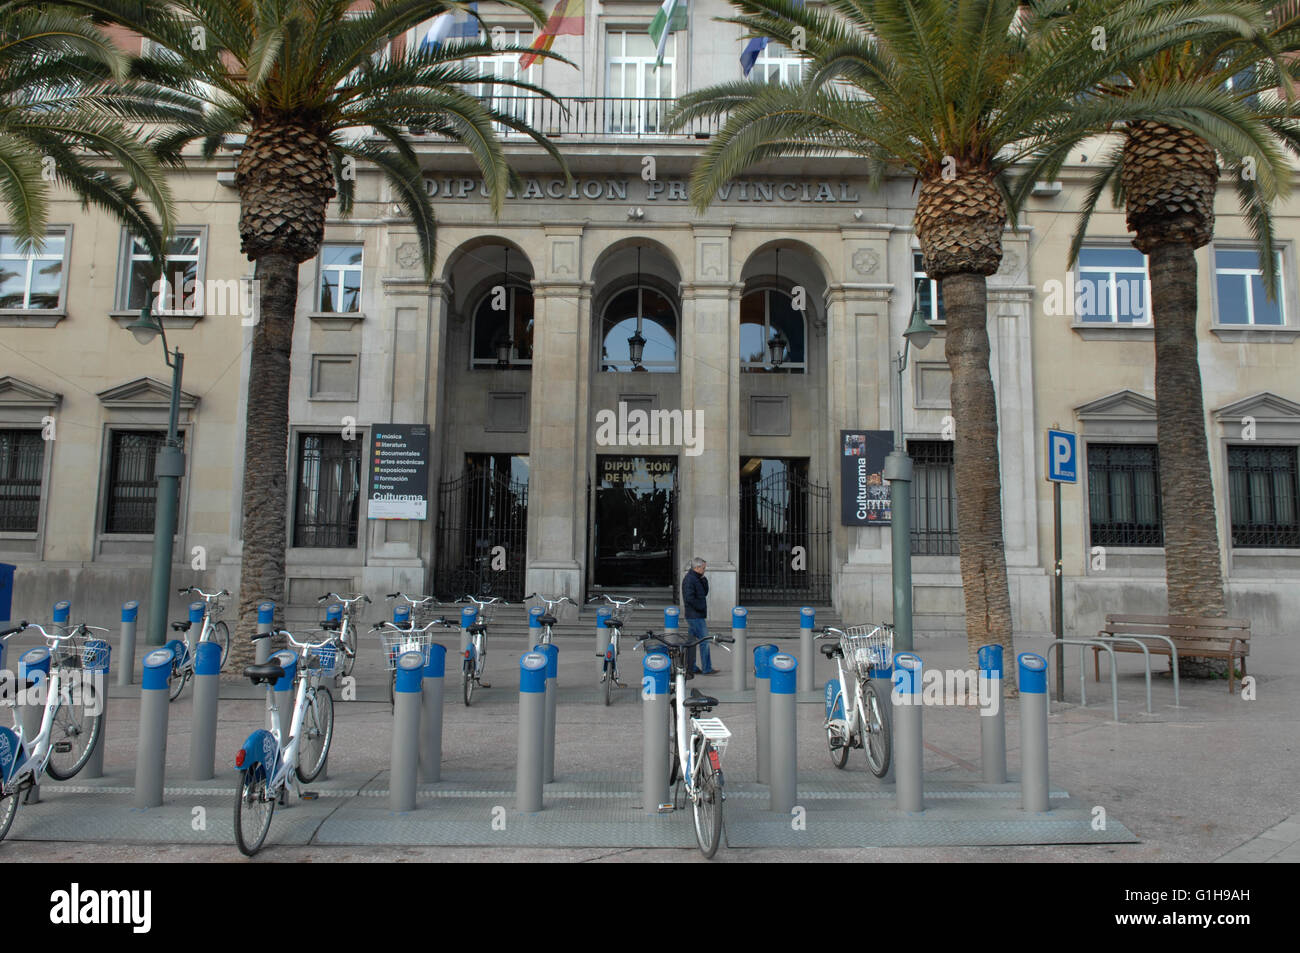 County council,biciclette a noleggio, Malaga, Malagabici Foto Stock